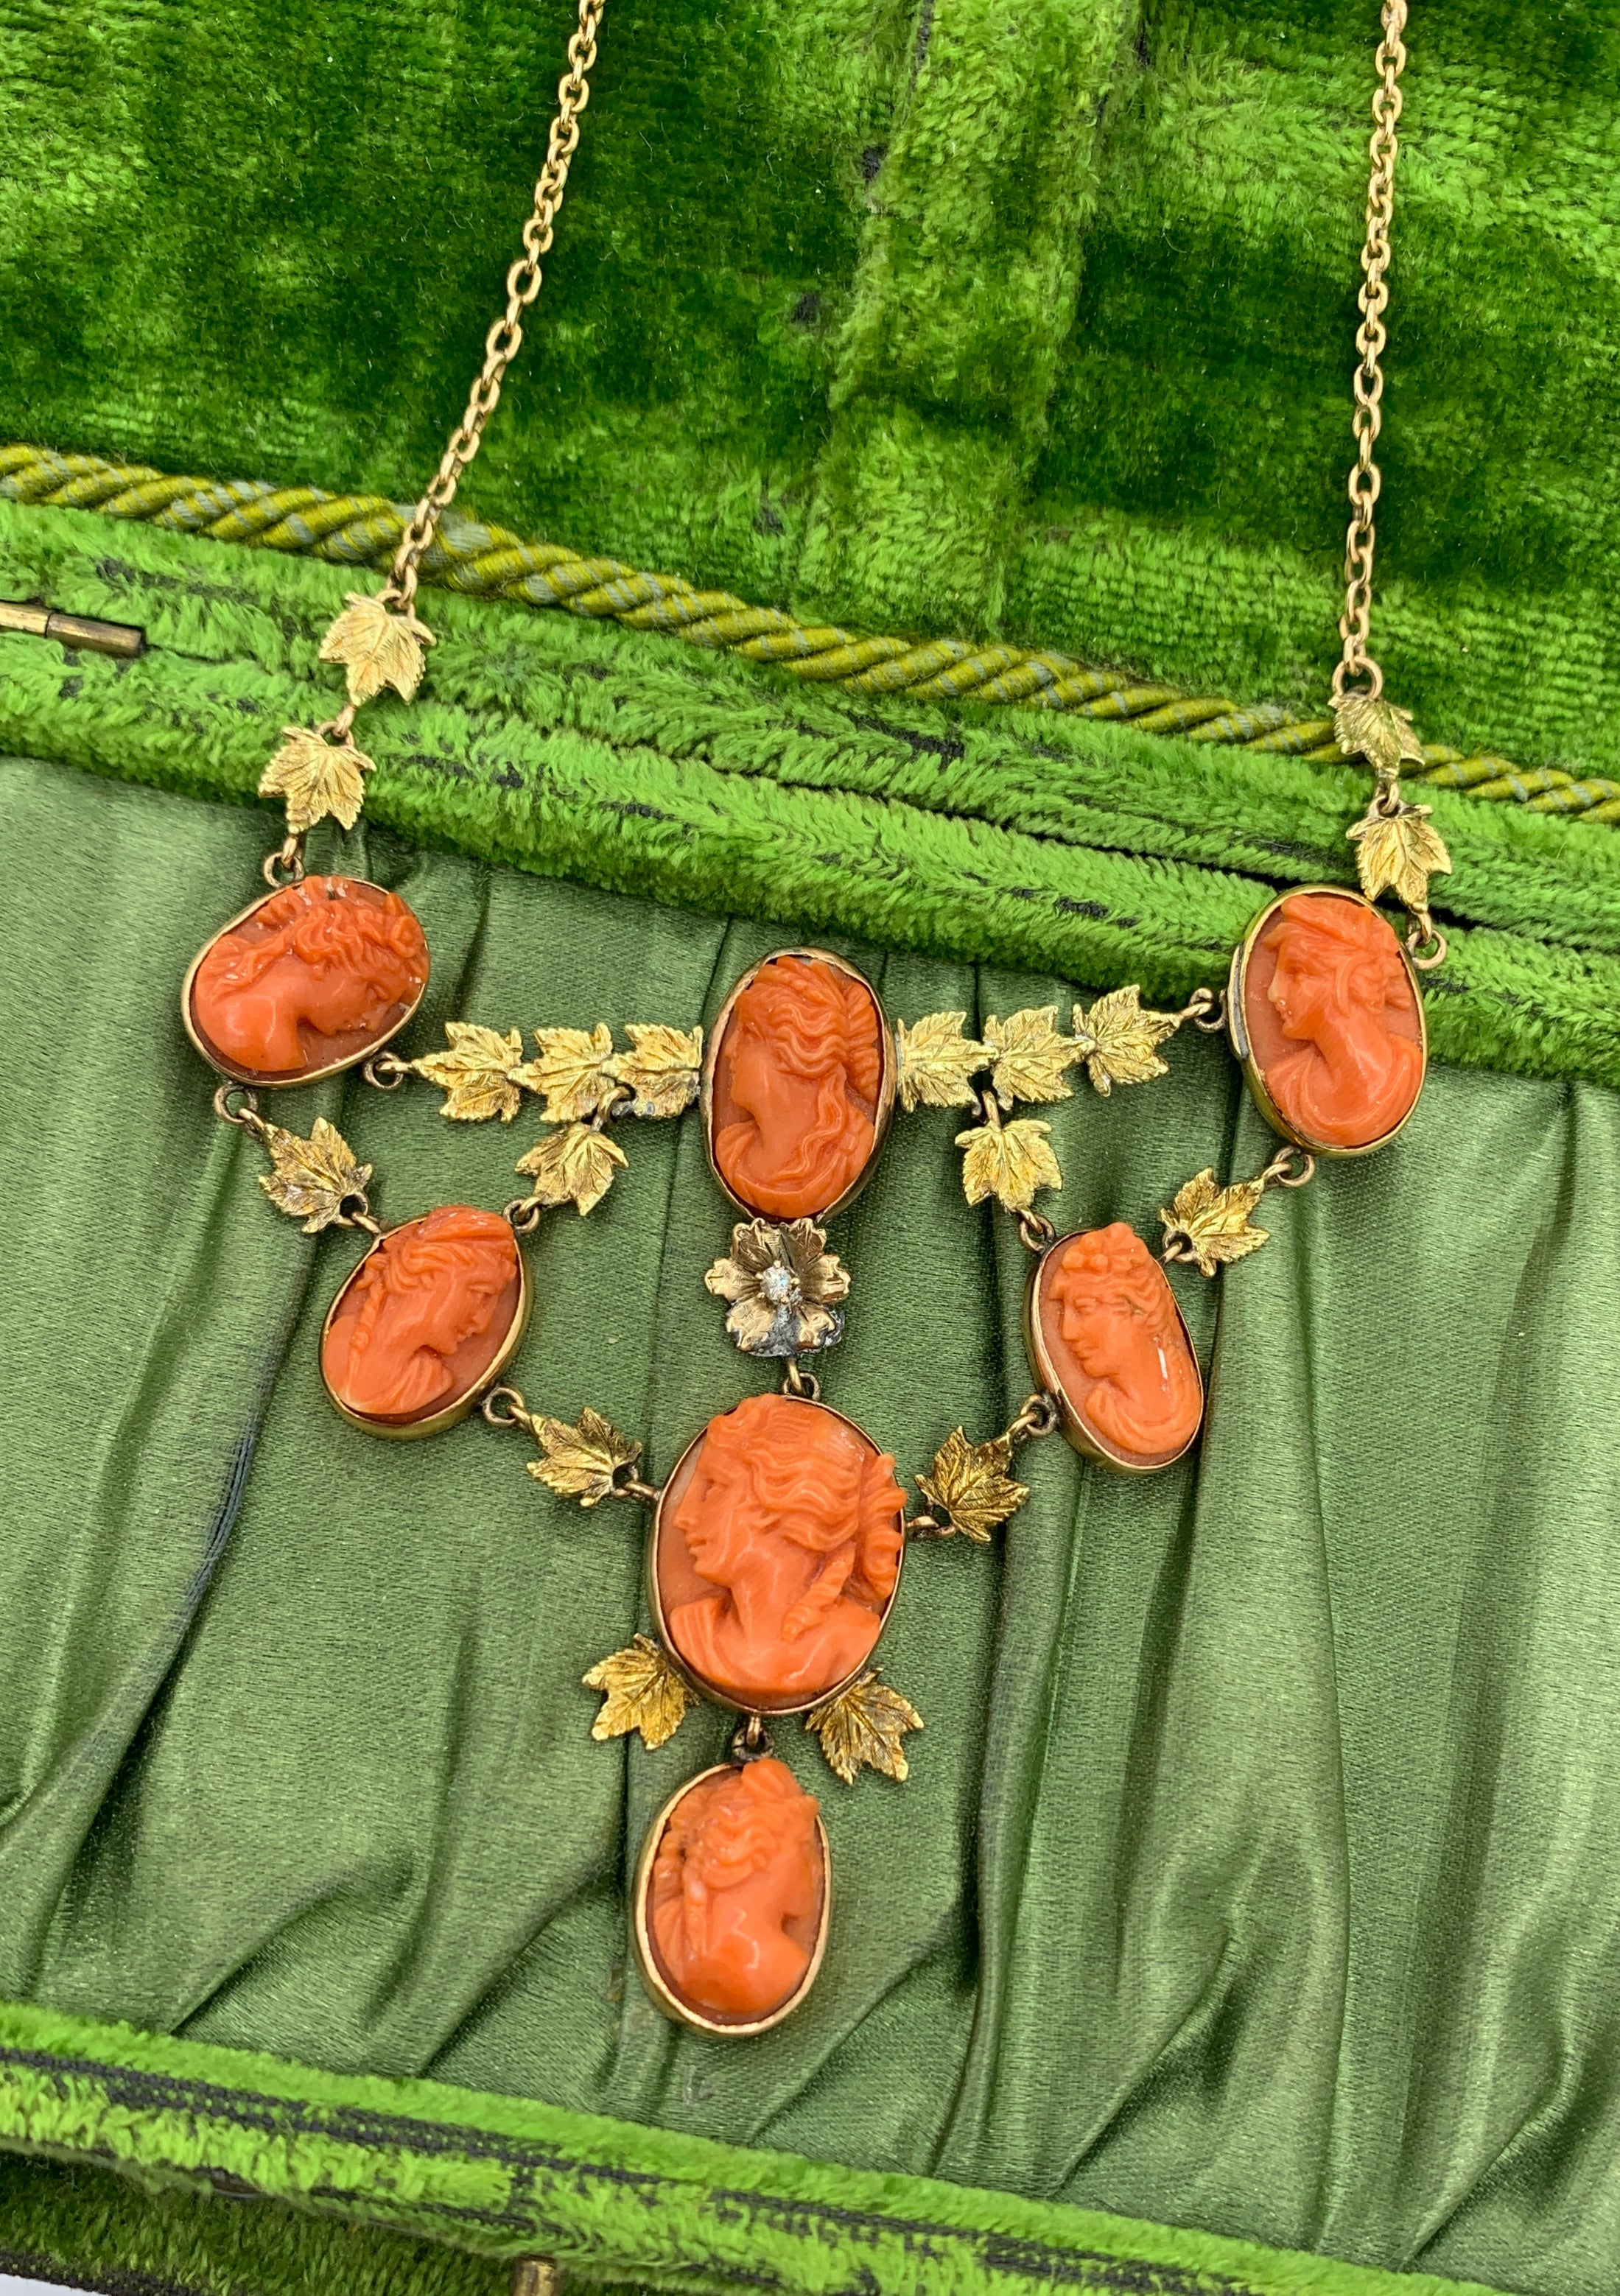 Il s'agit d'un collier pendentif en or 14 carats en corail, datant de la période victorienne, absolument magnifique. Il comprend sept magnifiques camées en corail sculptés à la main dans un motif de feuille avec une fleur centrale sertie d'un